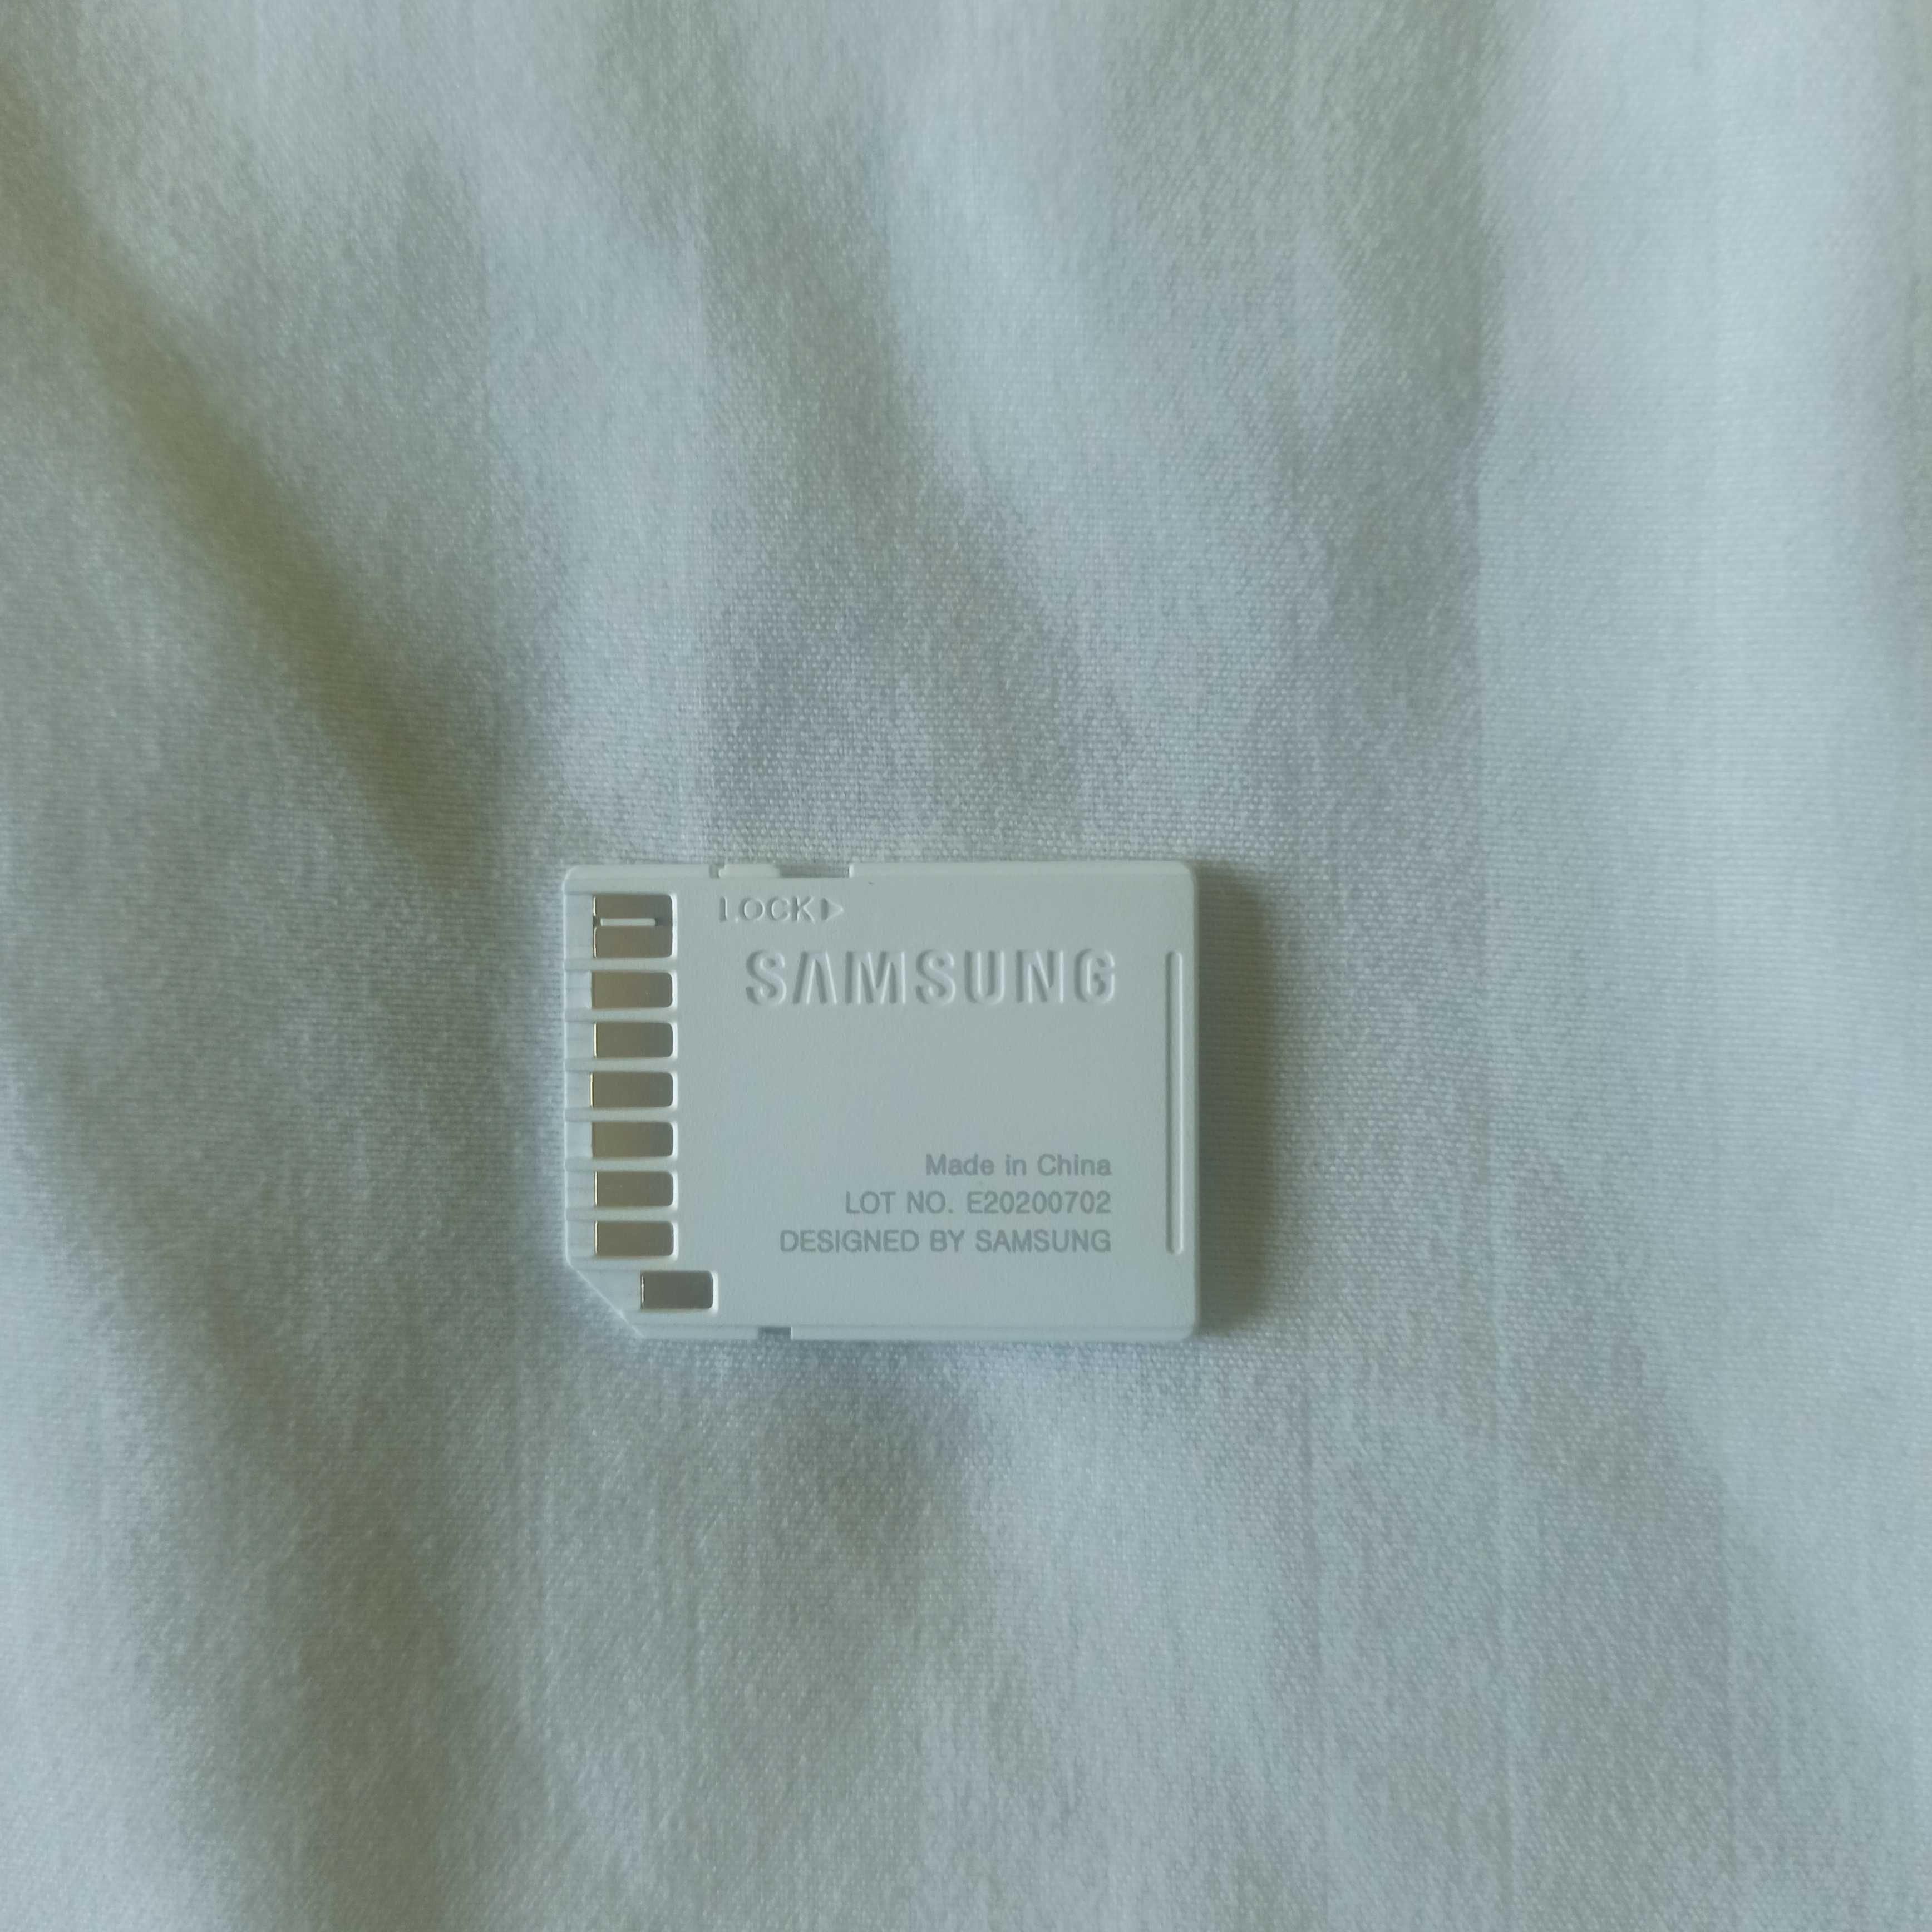 Vand adaptor SD Samsung pentru microSD si cititor de carduri